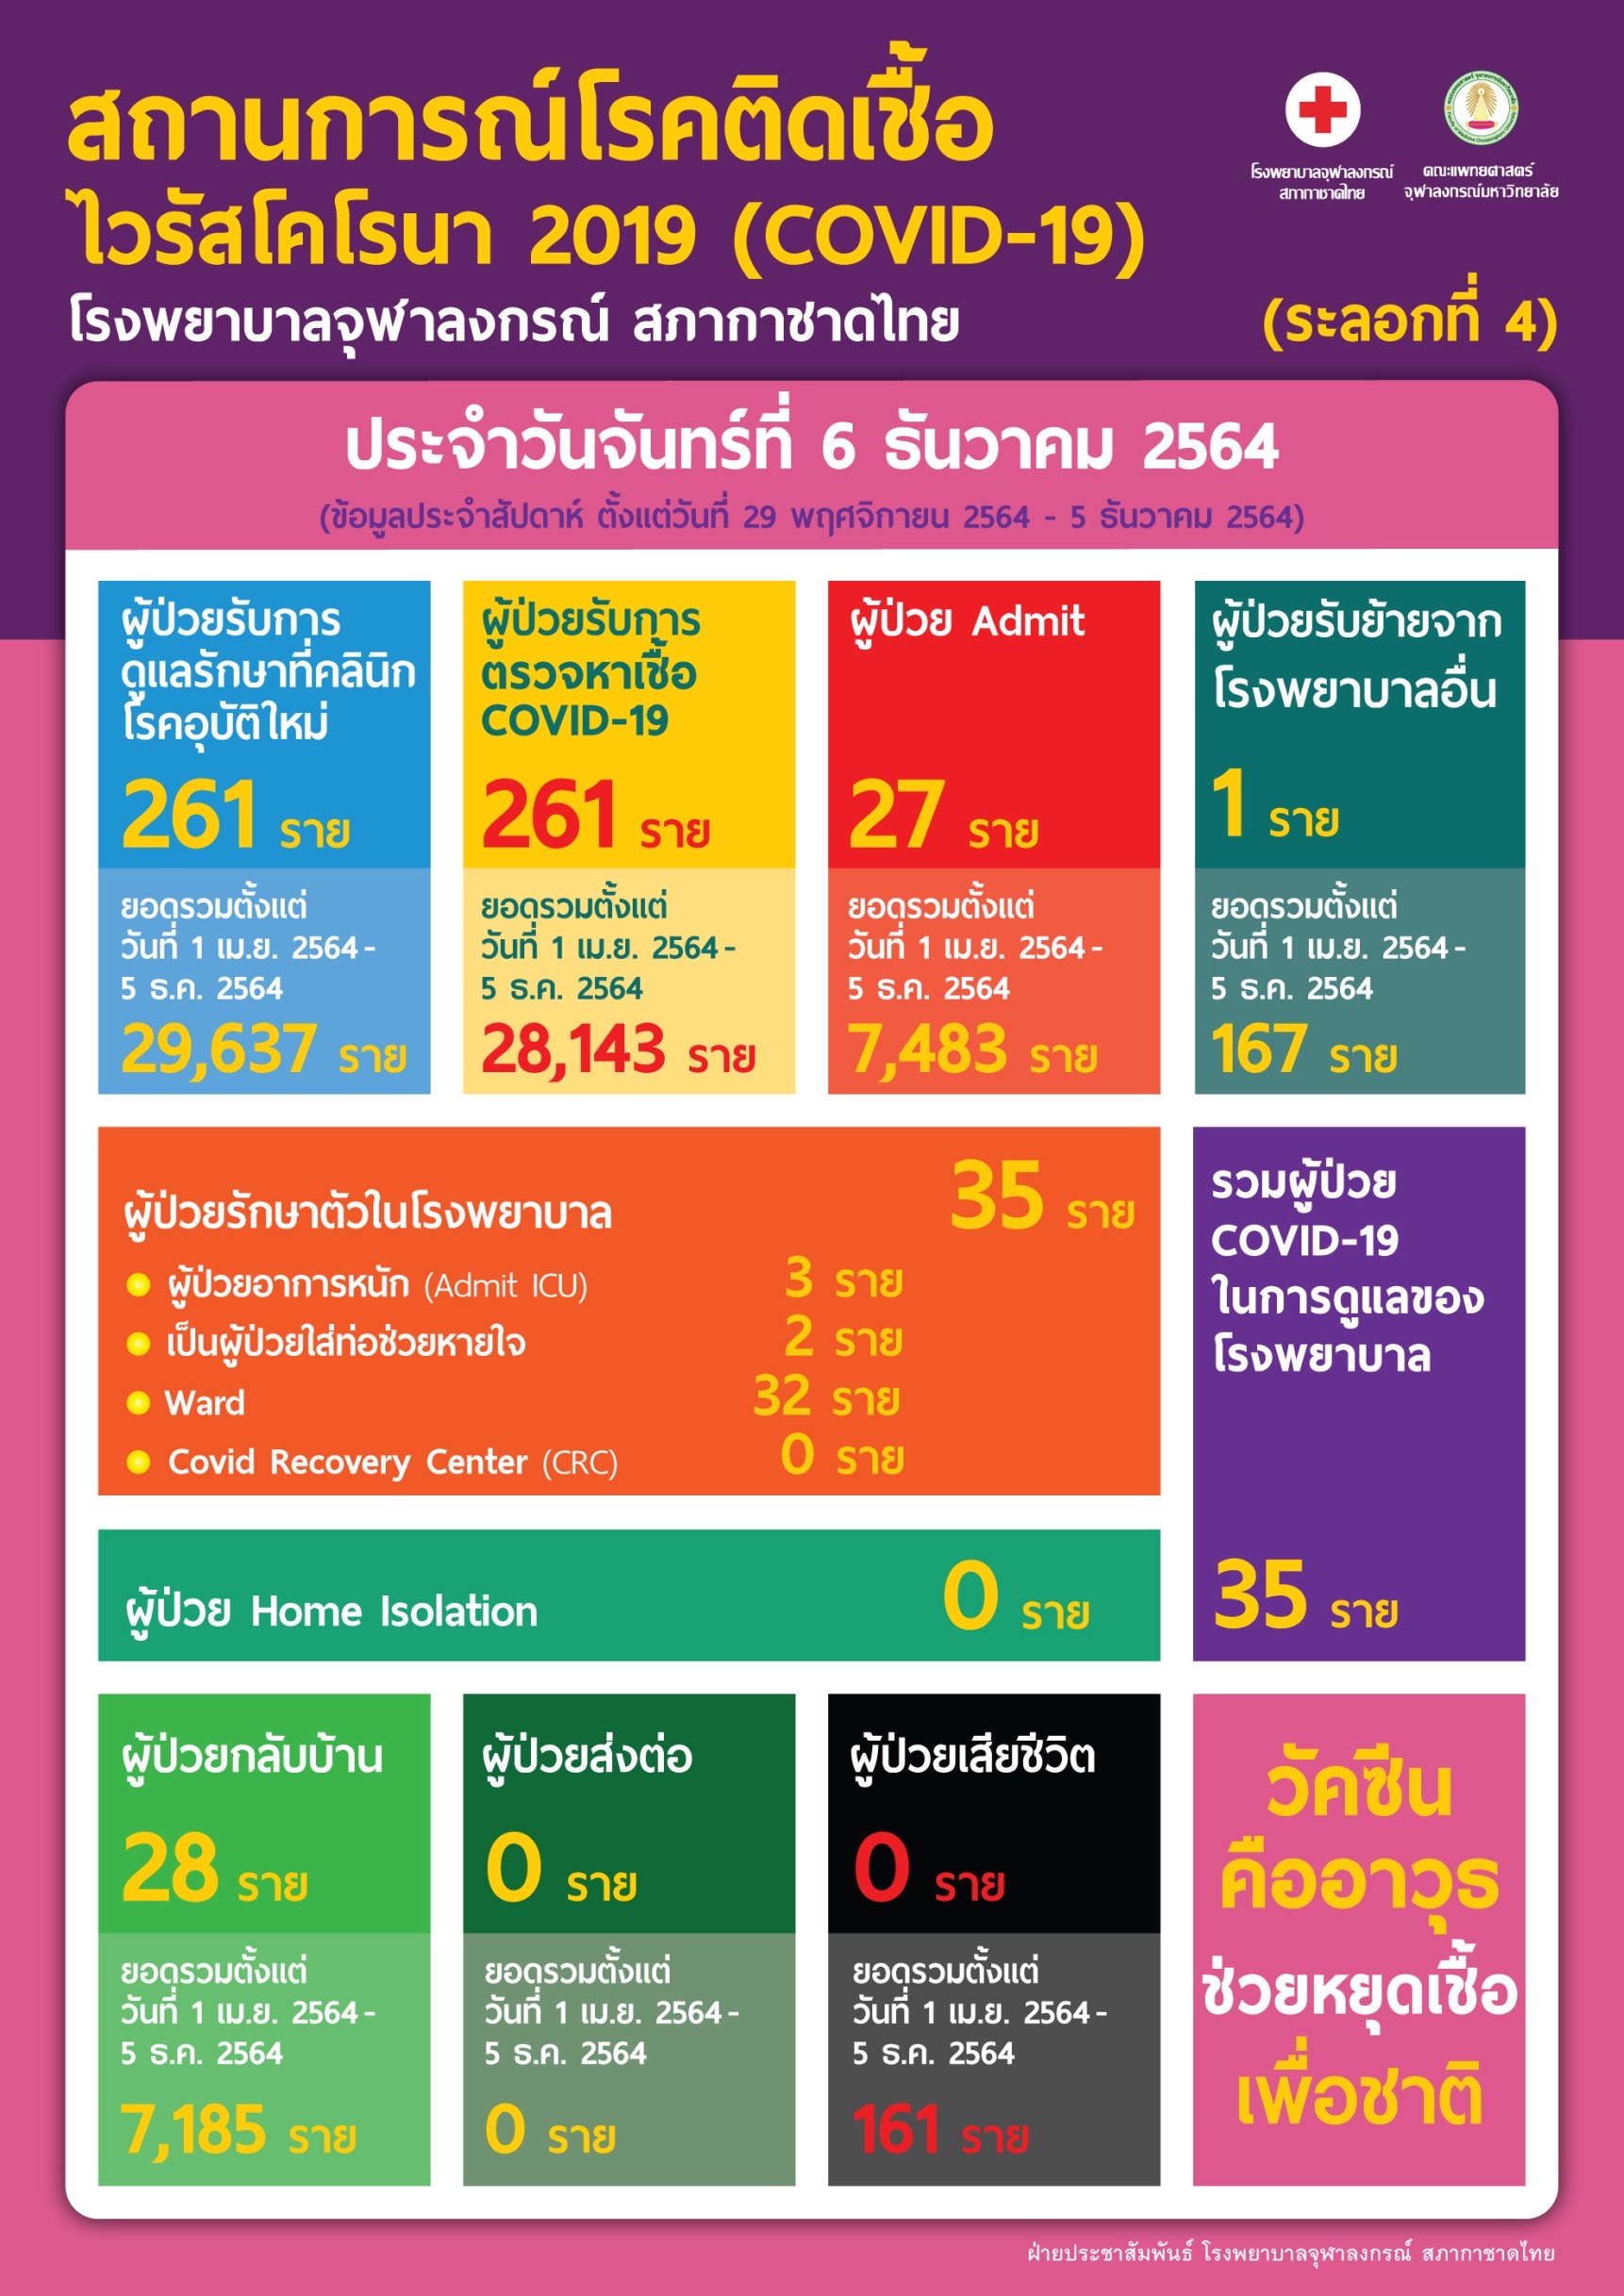 สถานการณ์โรคติดเชื้อไวรัสโคโรนา 2019 (COVID-19) (ระลอกที่ 4) โรงพยาบาลจุฬาลงกรณ์ สภากาชาดไทย ประจำวันจันทร์ที่ 6 ธันวาคม 2564